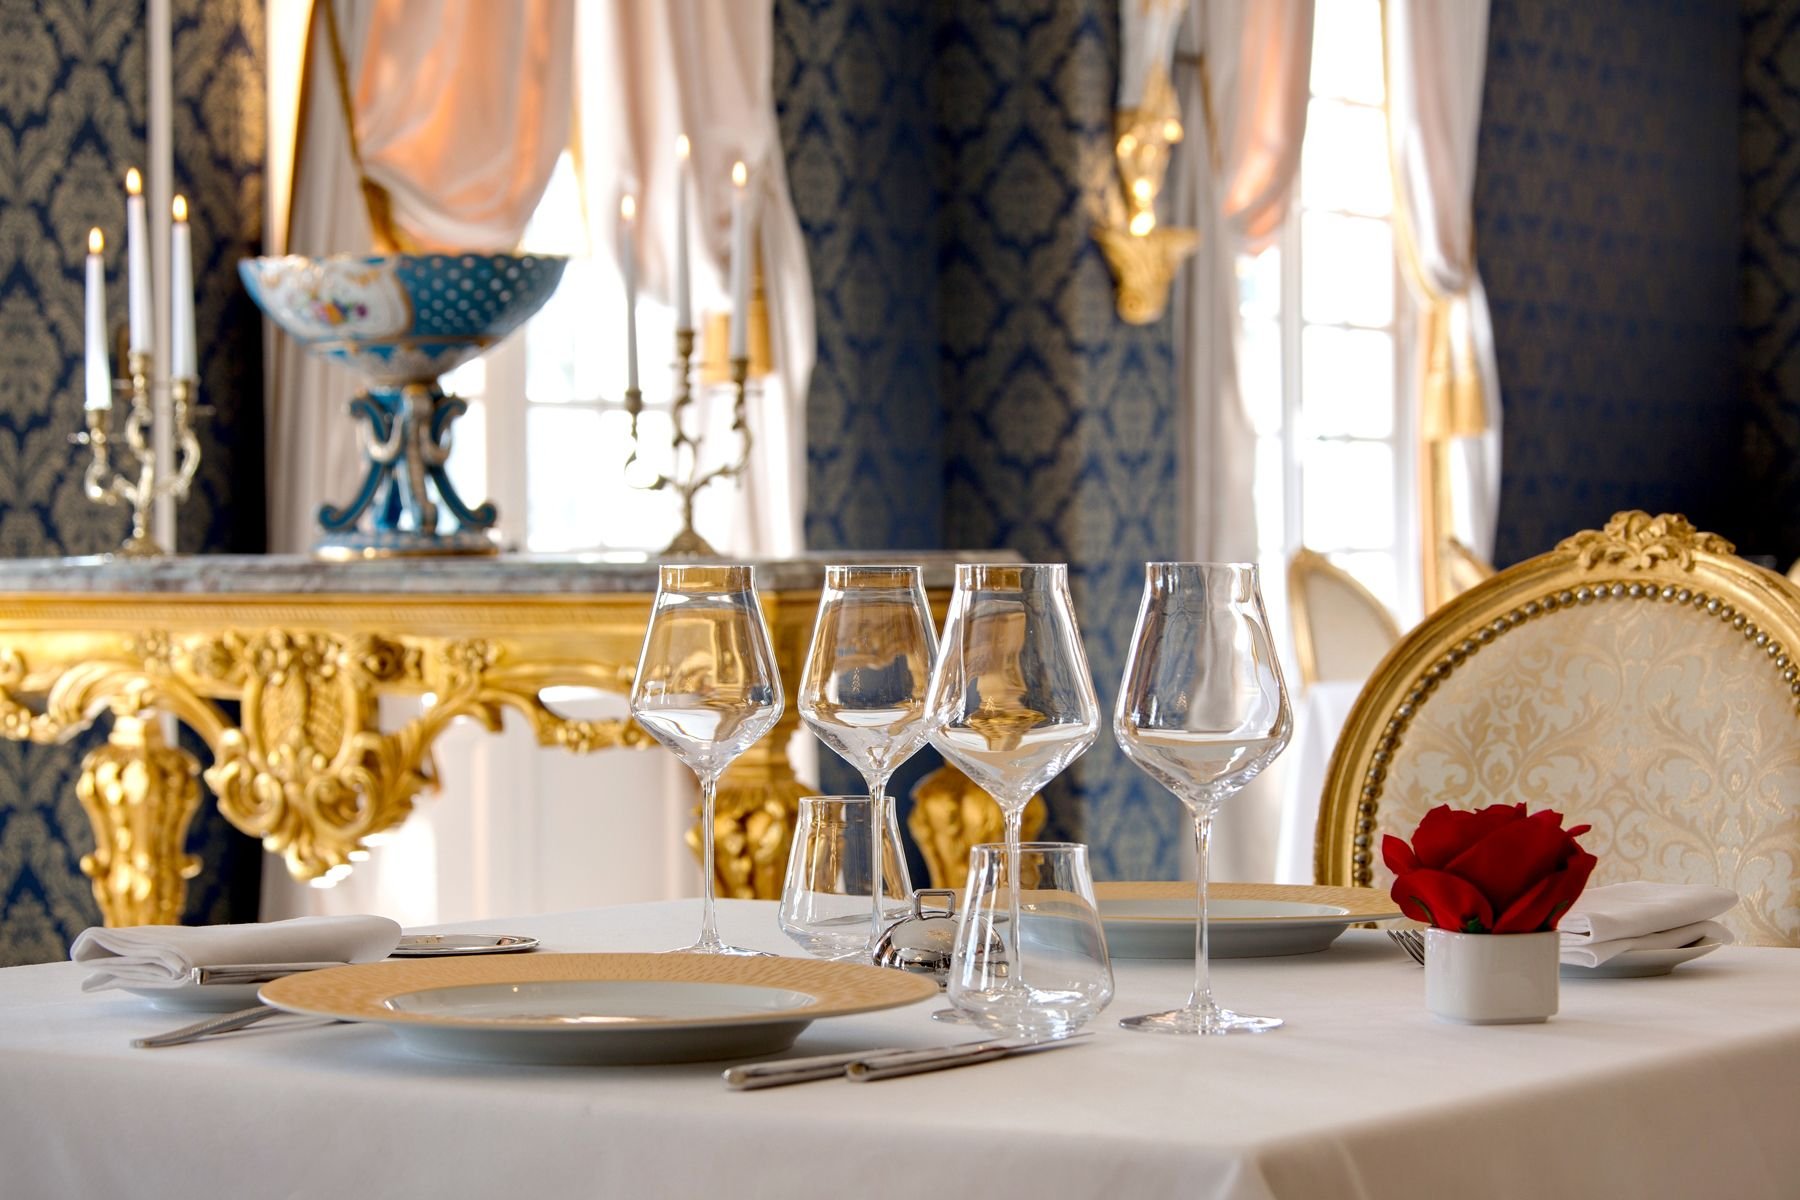 Château de Beauvois | Hotel restaurant gastronomic in Tours